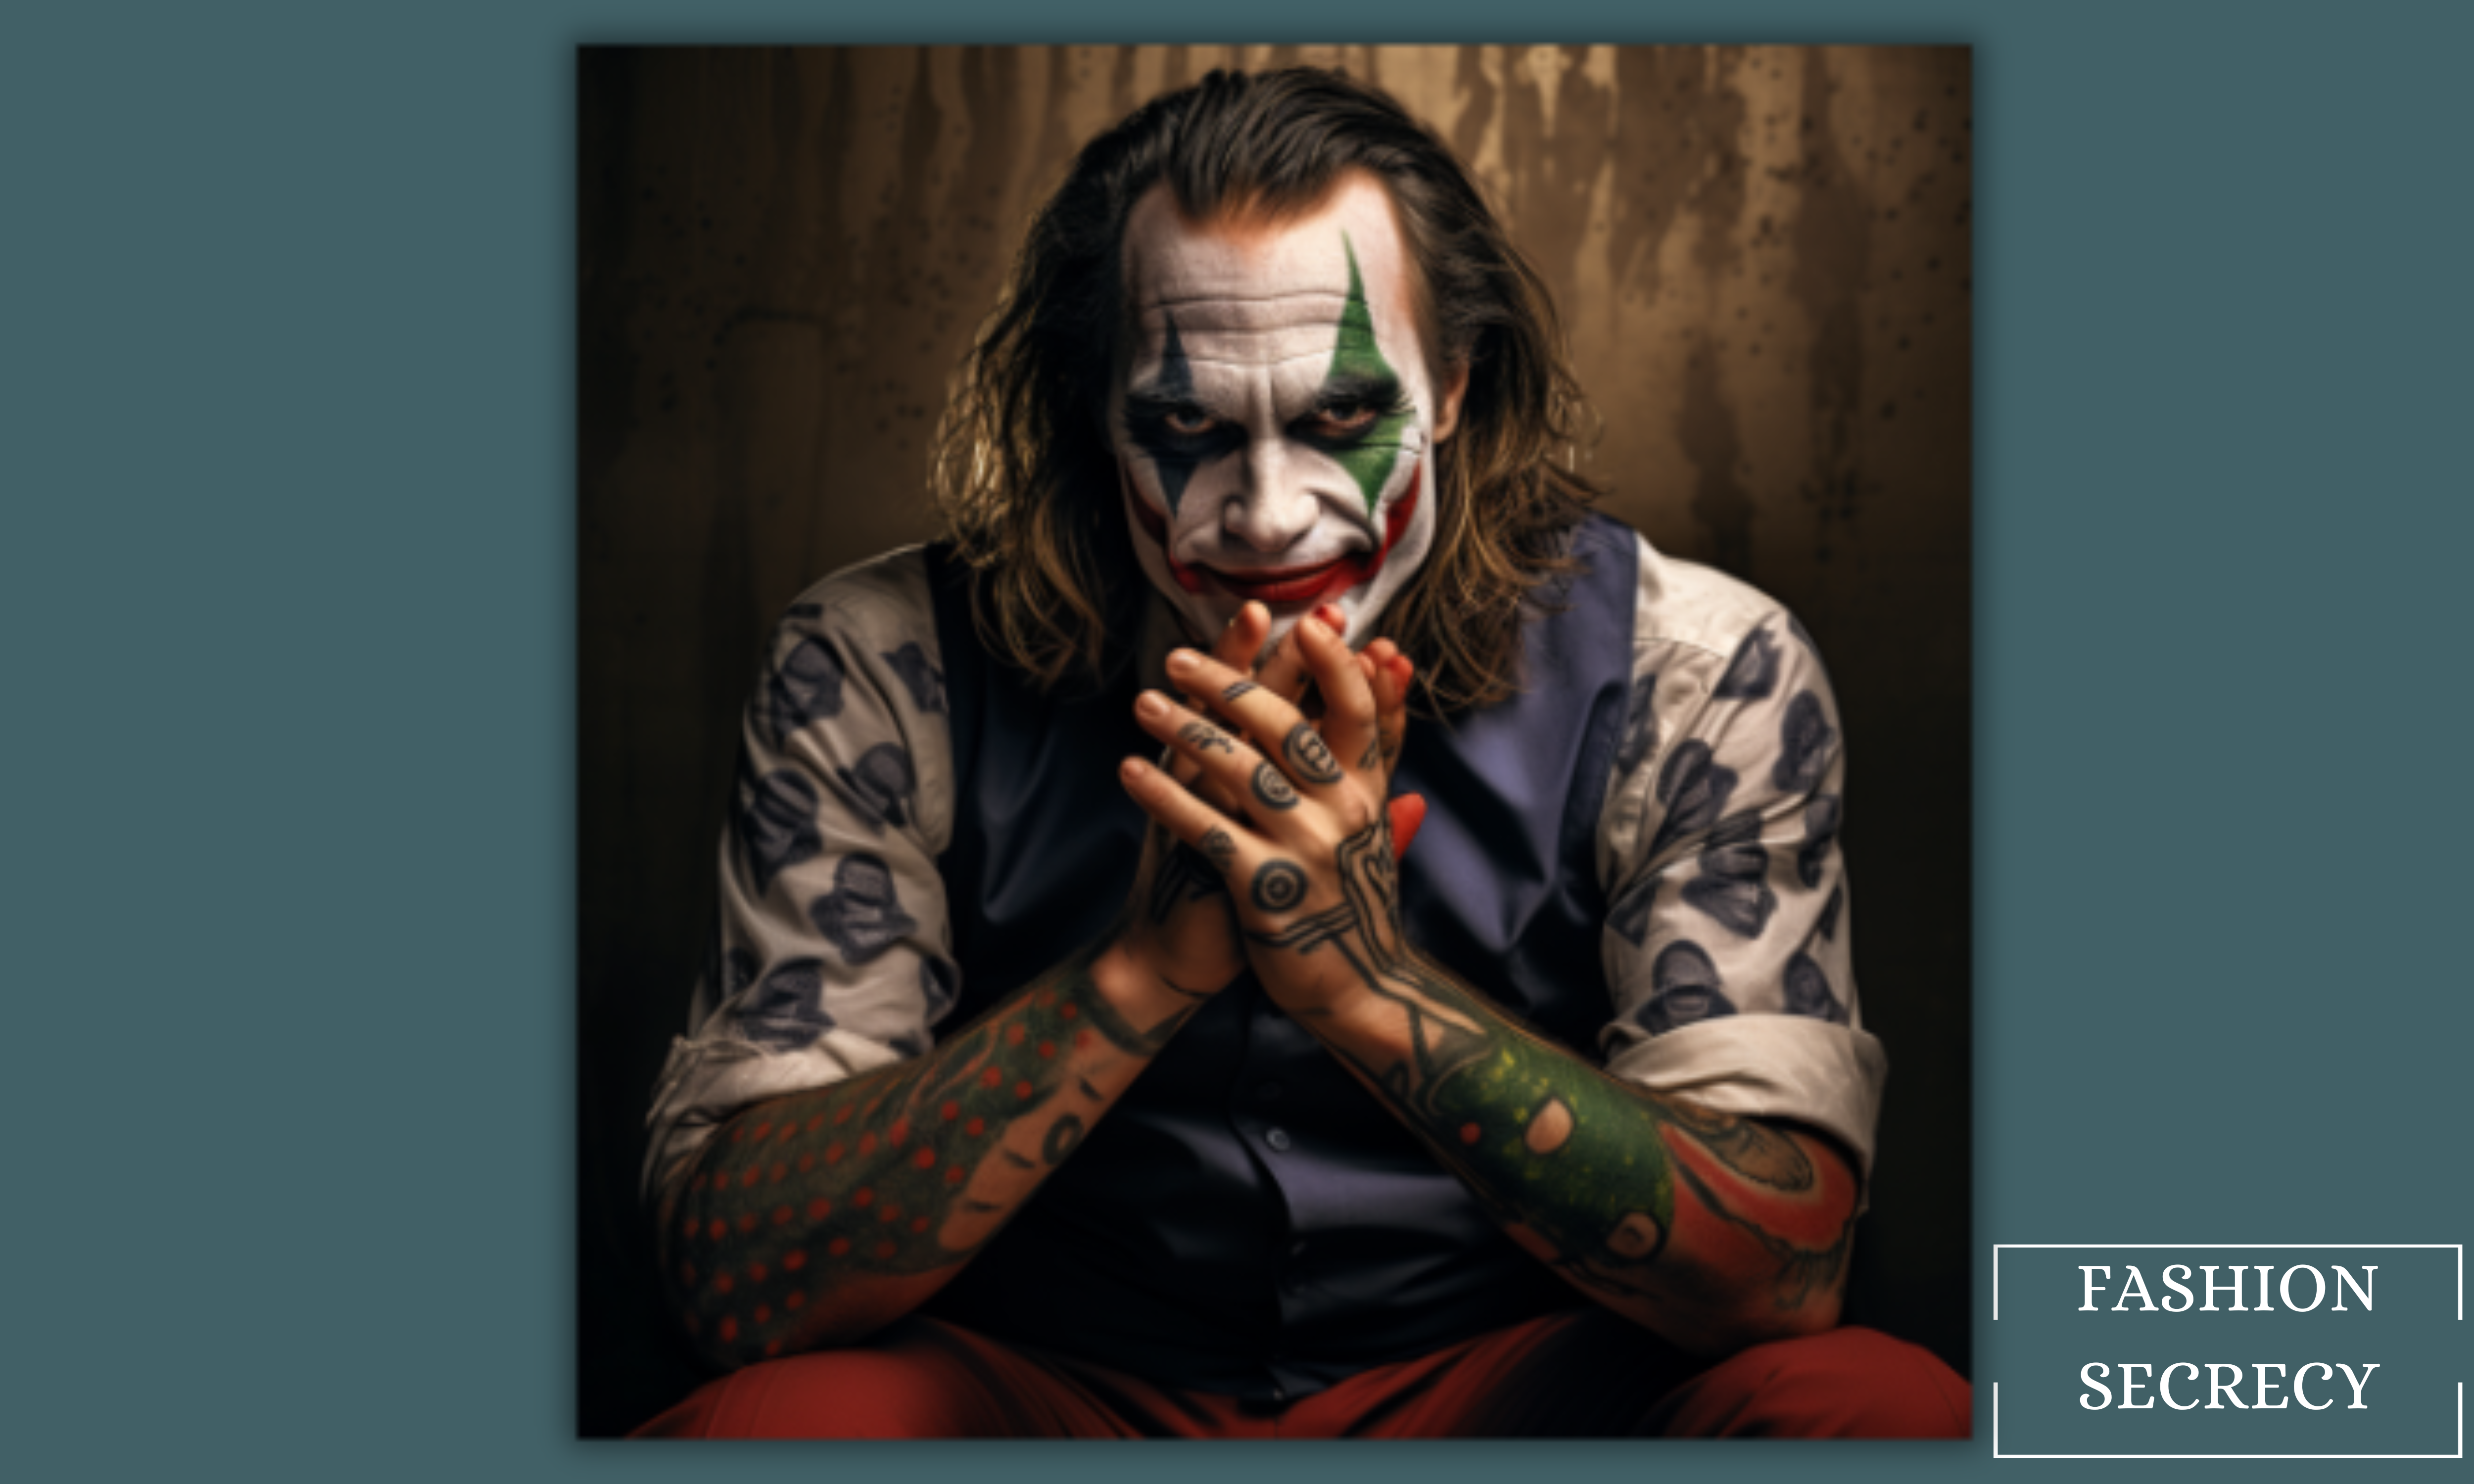 GOROMON 6 Sheets The Joker Temporary Tattoos For Halloween Makeup Kit  Suicide Squad Joker Tattoos Stickers For Women Men Adults Damaged Tattoo  Joker Hand Smile Face Poker Prisoner Costume Skull Set B(6